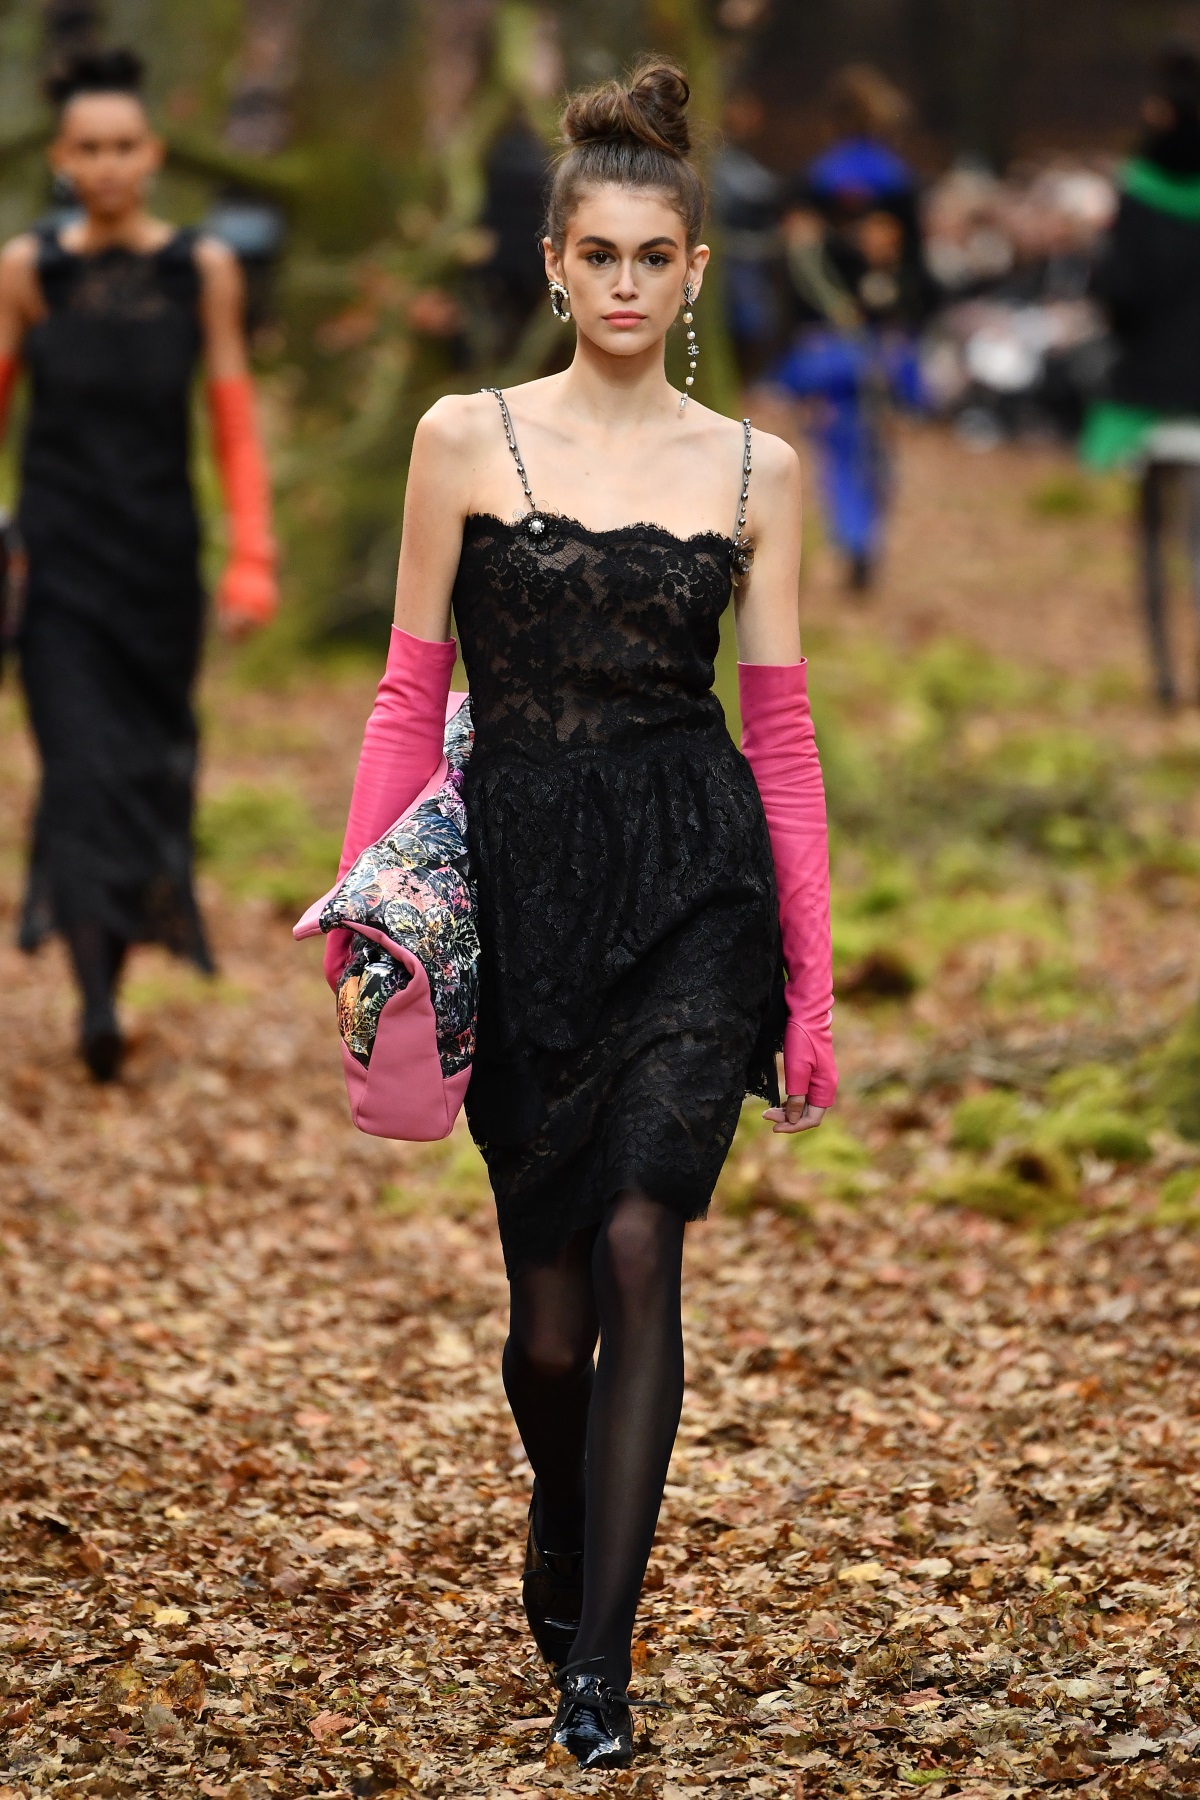 Карл Лагерфелд облече манекенките в дрехи с щамповани листа за ревюто, което възпя есента насред мъглива гора в Гран пале в Париж. В колекцията есен/зима, представена през последния ден на Парижката седмица на модата, има някои доста непрактични облекла за разходка сред природата, като златисти ботушки или черната рокличка, която демонстрира дъщерята на Синди Крауфорд - 16-годишната Кая Гербер.